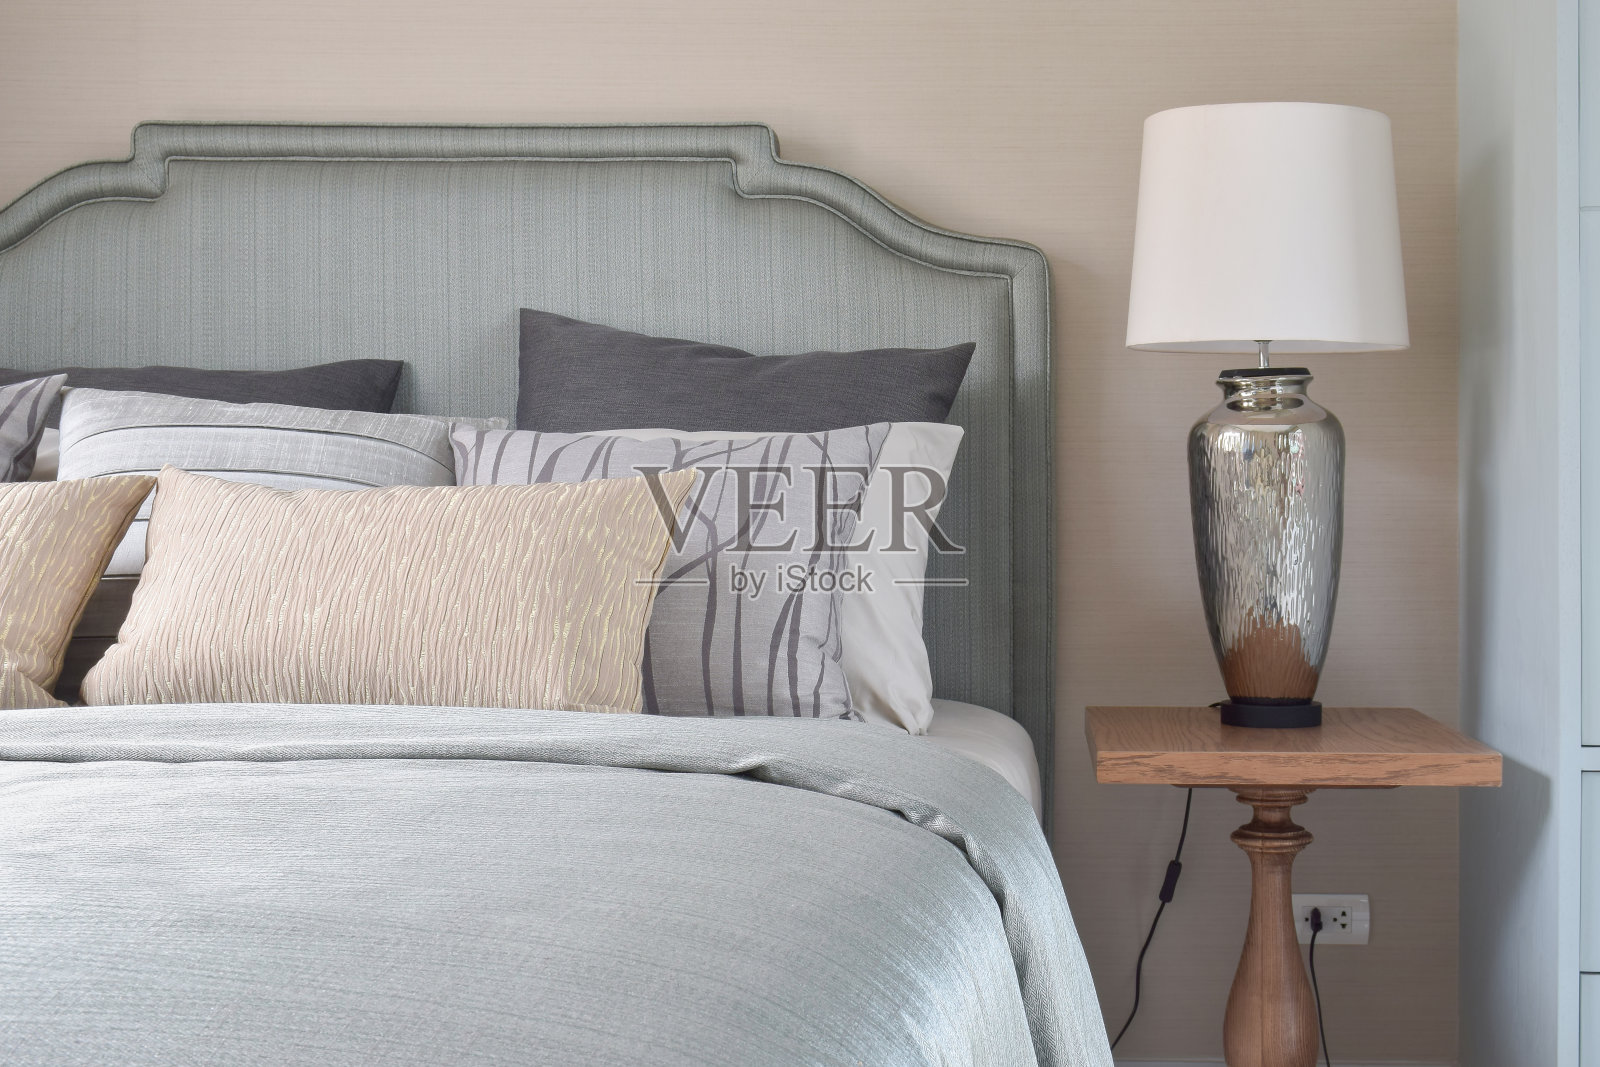 浪漫风格的床上用品:床头柜上的绸缎毯子和台灯照片摄影图片